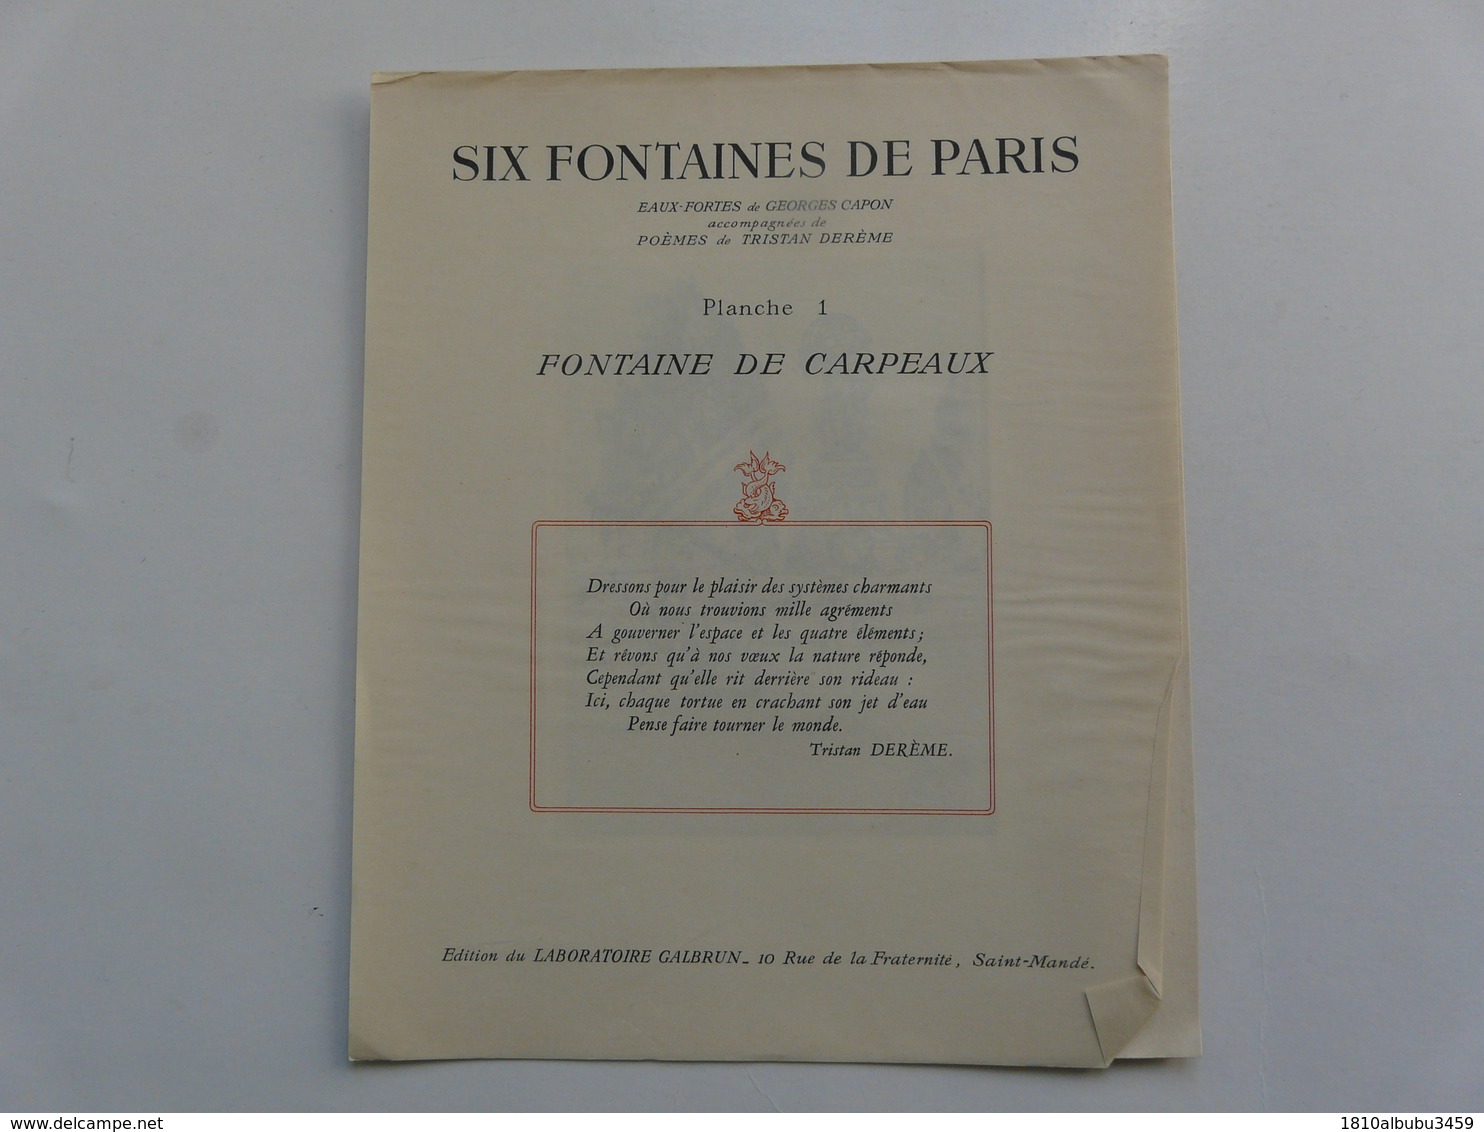 EAUX-FORTES de G. CAPON accompagnées de POEMES de T. DEREME : Six Fontaines de PARIS